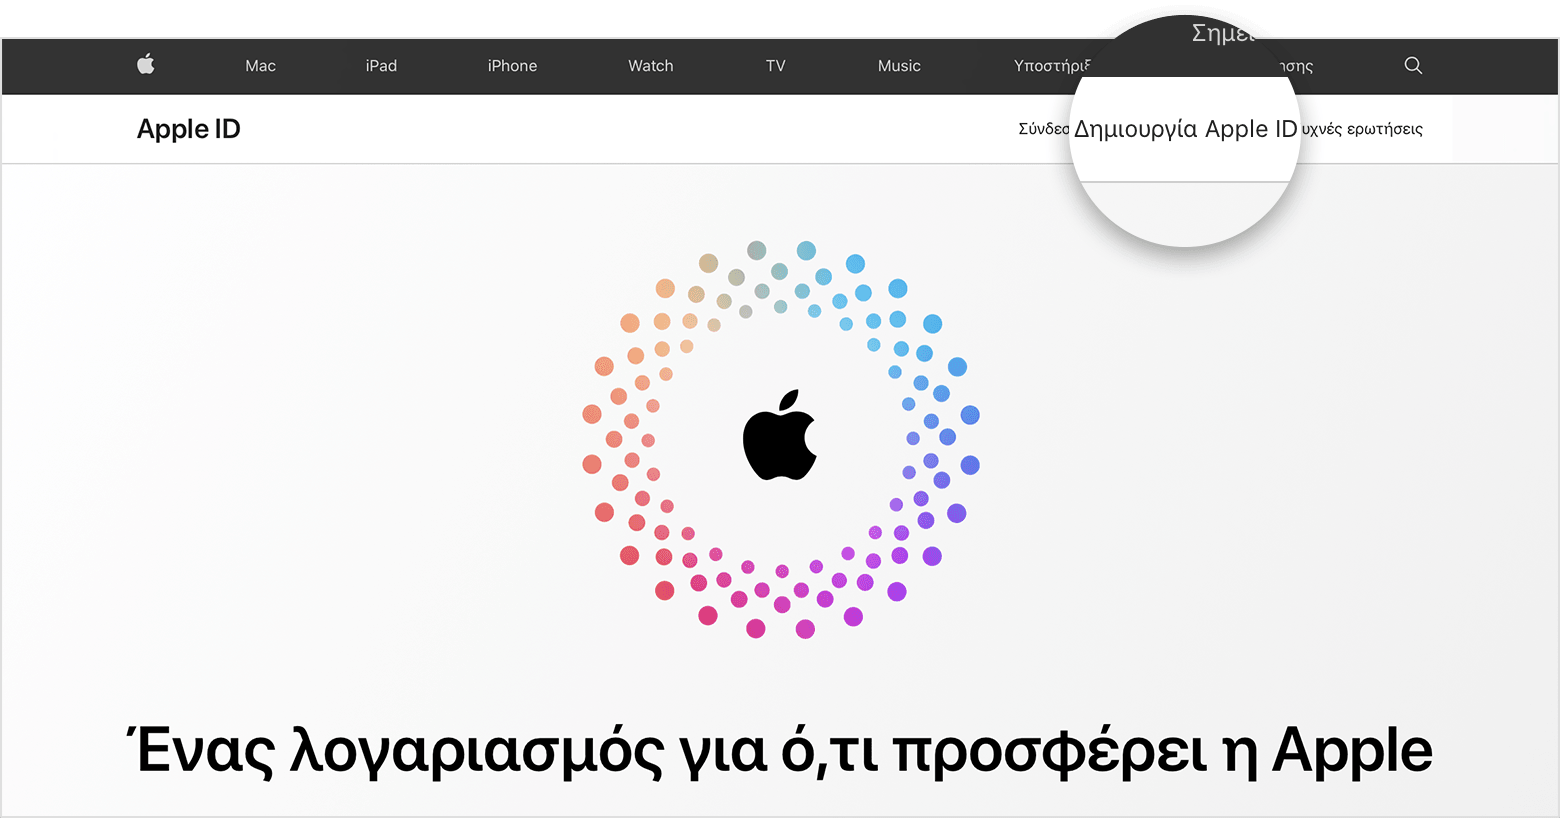 Στιγμιότυπο οθόνης του appleid.apple.com, στο οποίο εμφανίζεται ένα λογότυπο της Apple στο κέντρο της οθόνης μέσα σε ομόκεντρους έγχρωμους κύκλους.